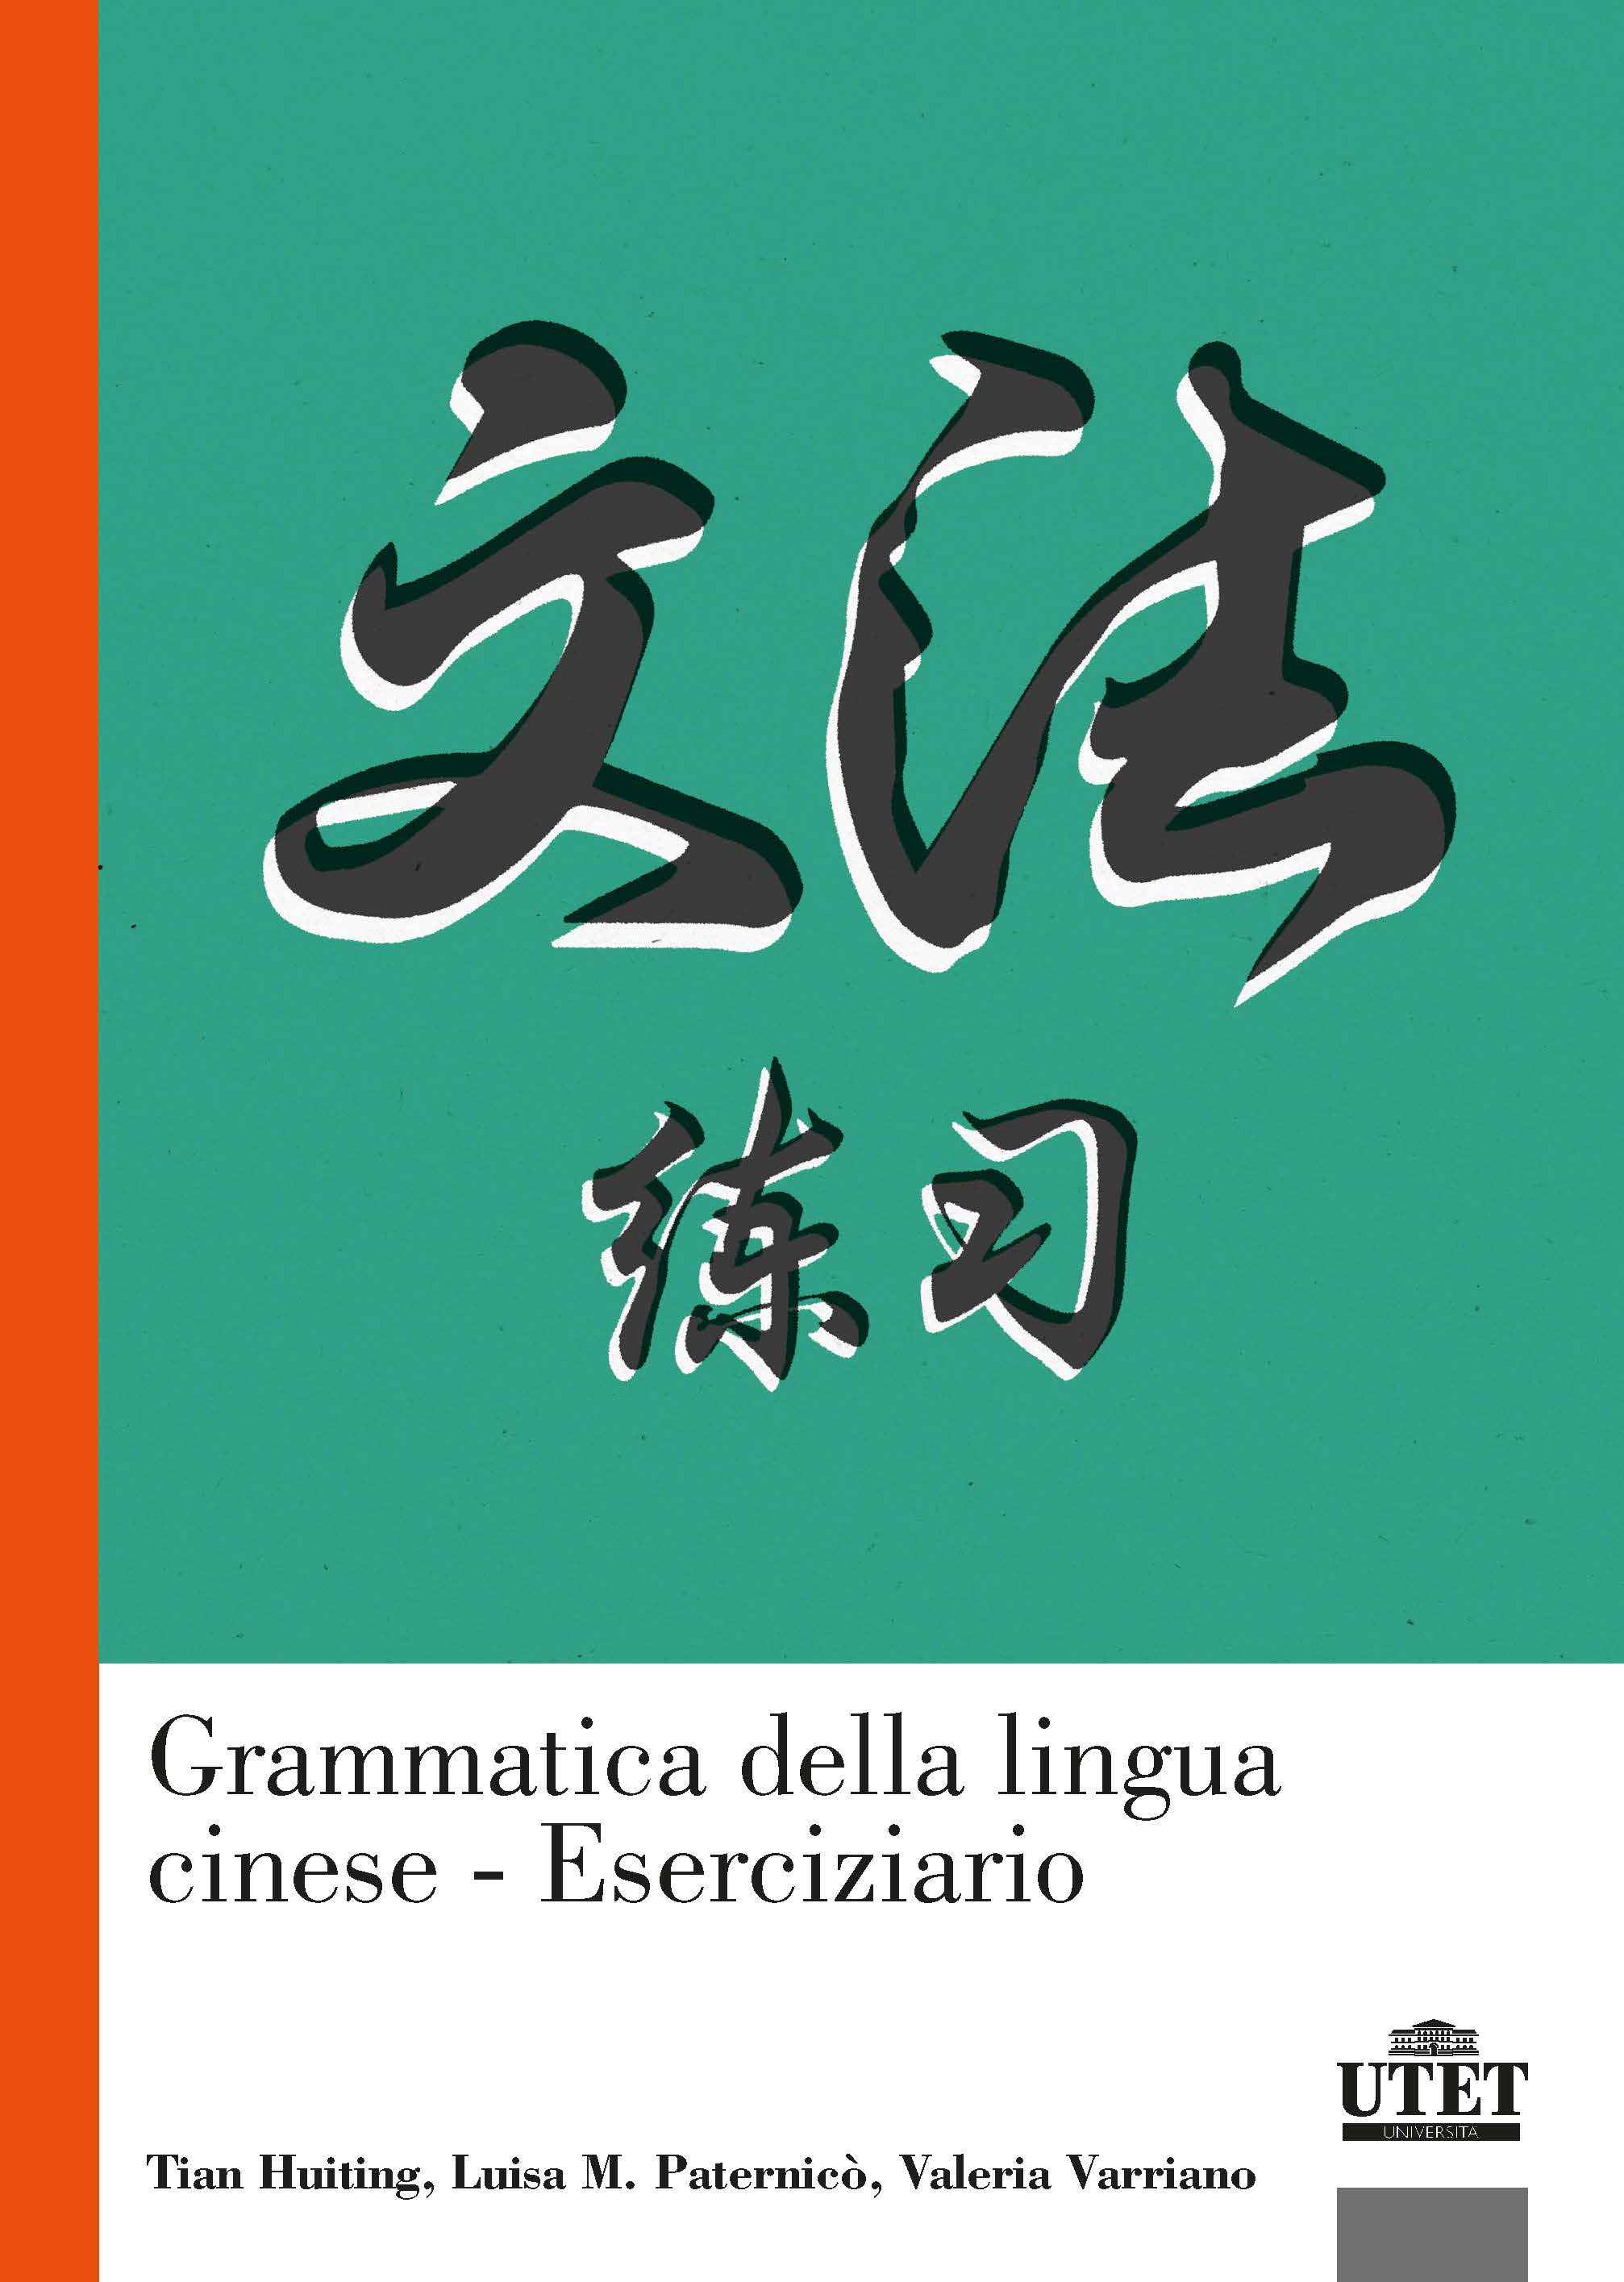 Grammatica della lingua cinese - Eserciziario